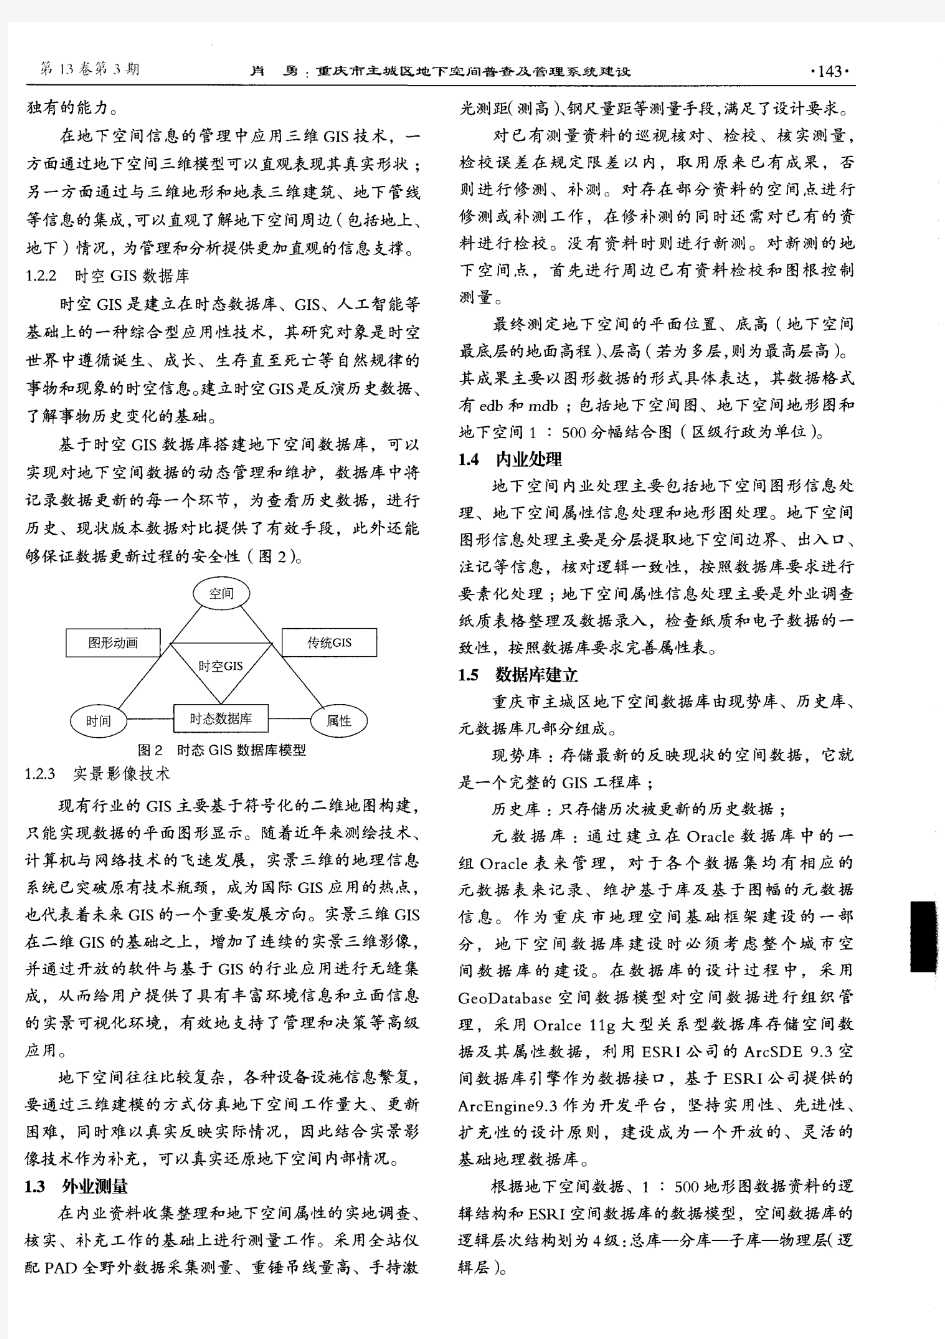 重庆市主城区地下空间普查及管理系统建设